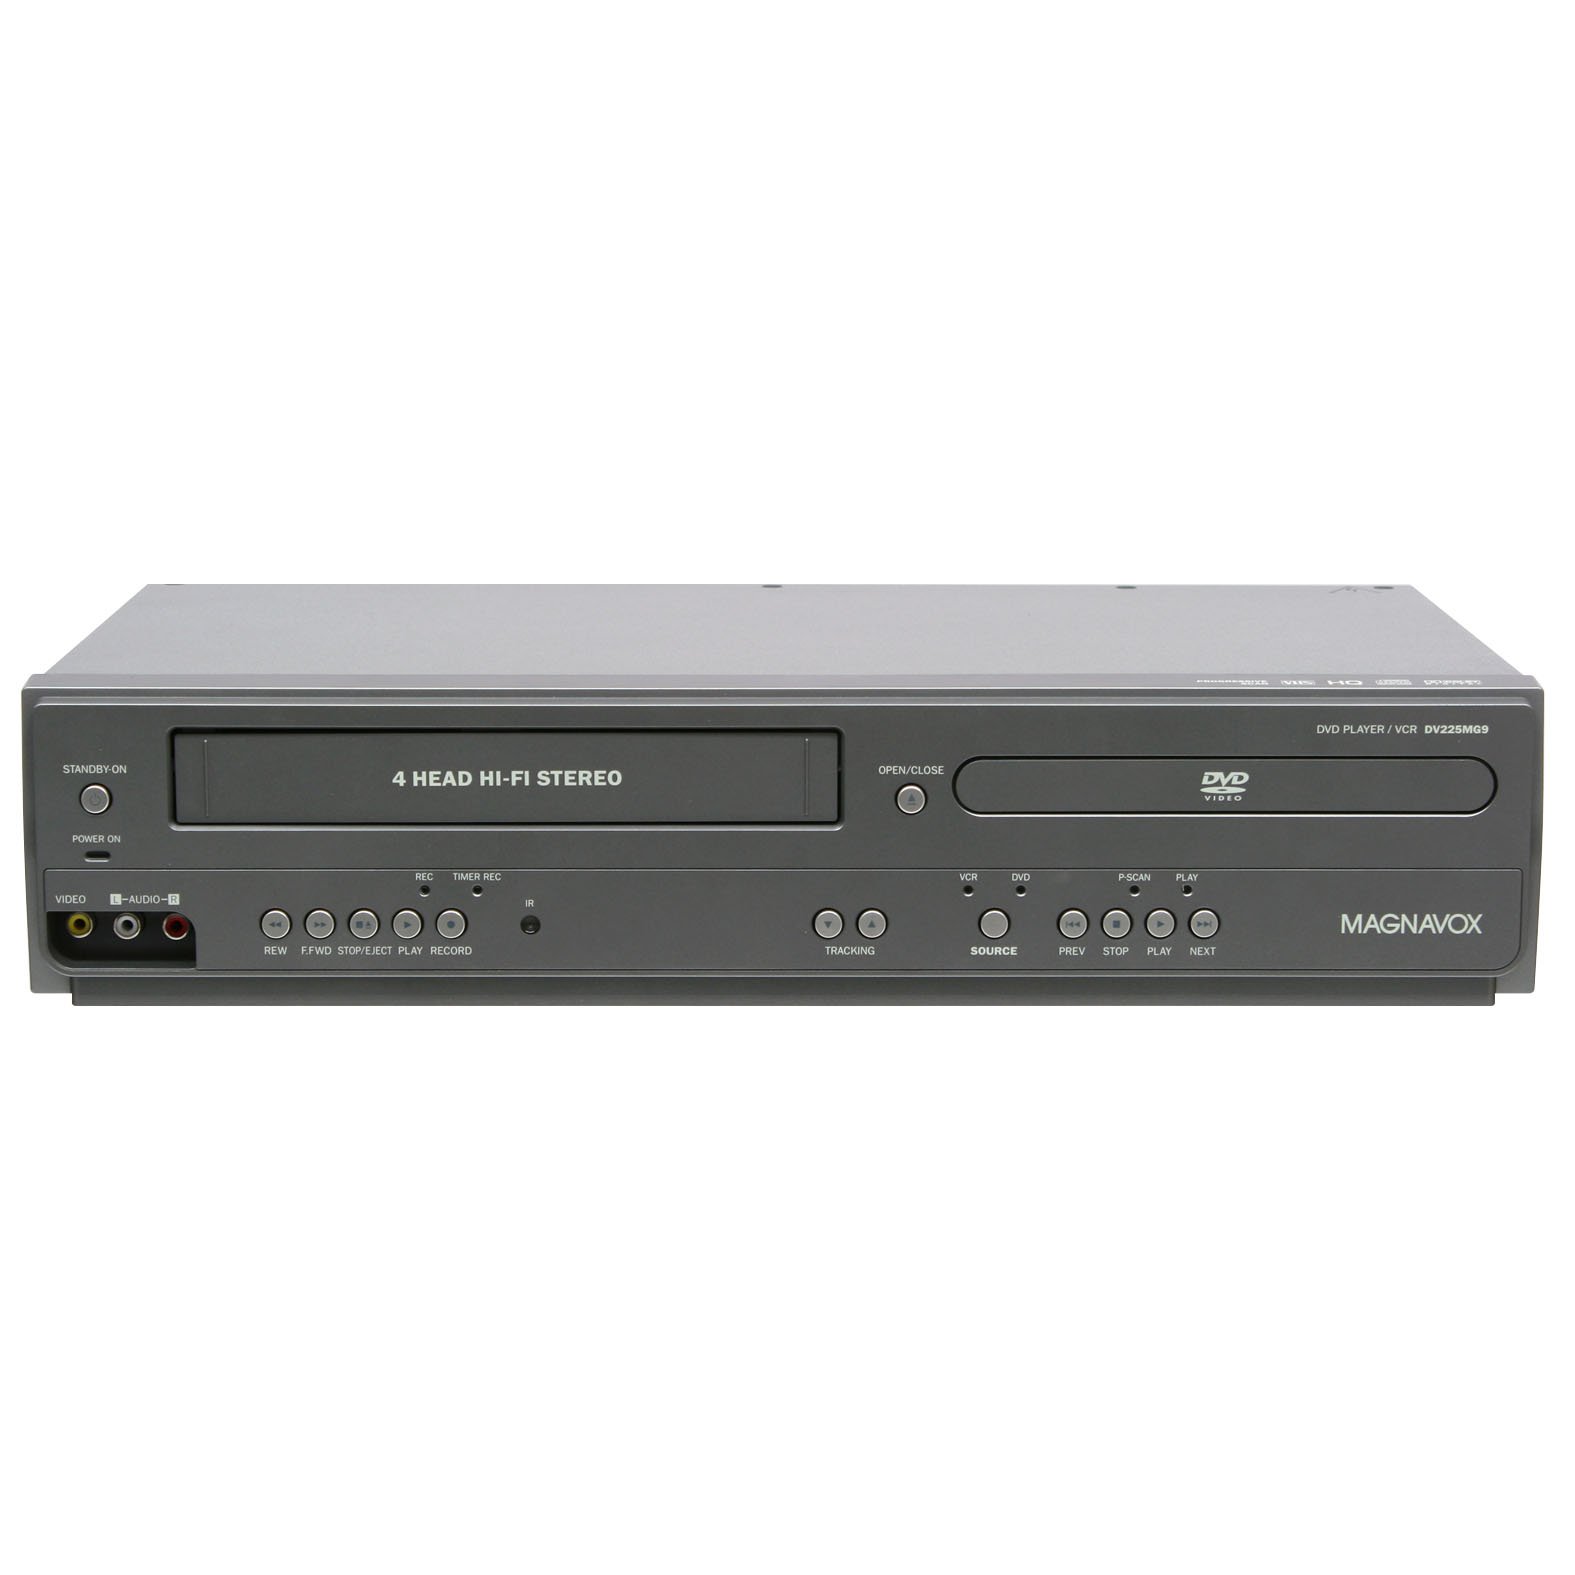 Magnavox DV225MG9 Reproductor de DVD y VCR estéreo Hi-Fi de 4 cabezales con grabación de entrada de línea